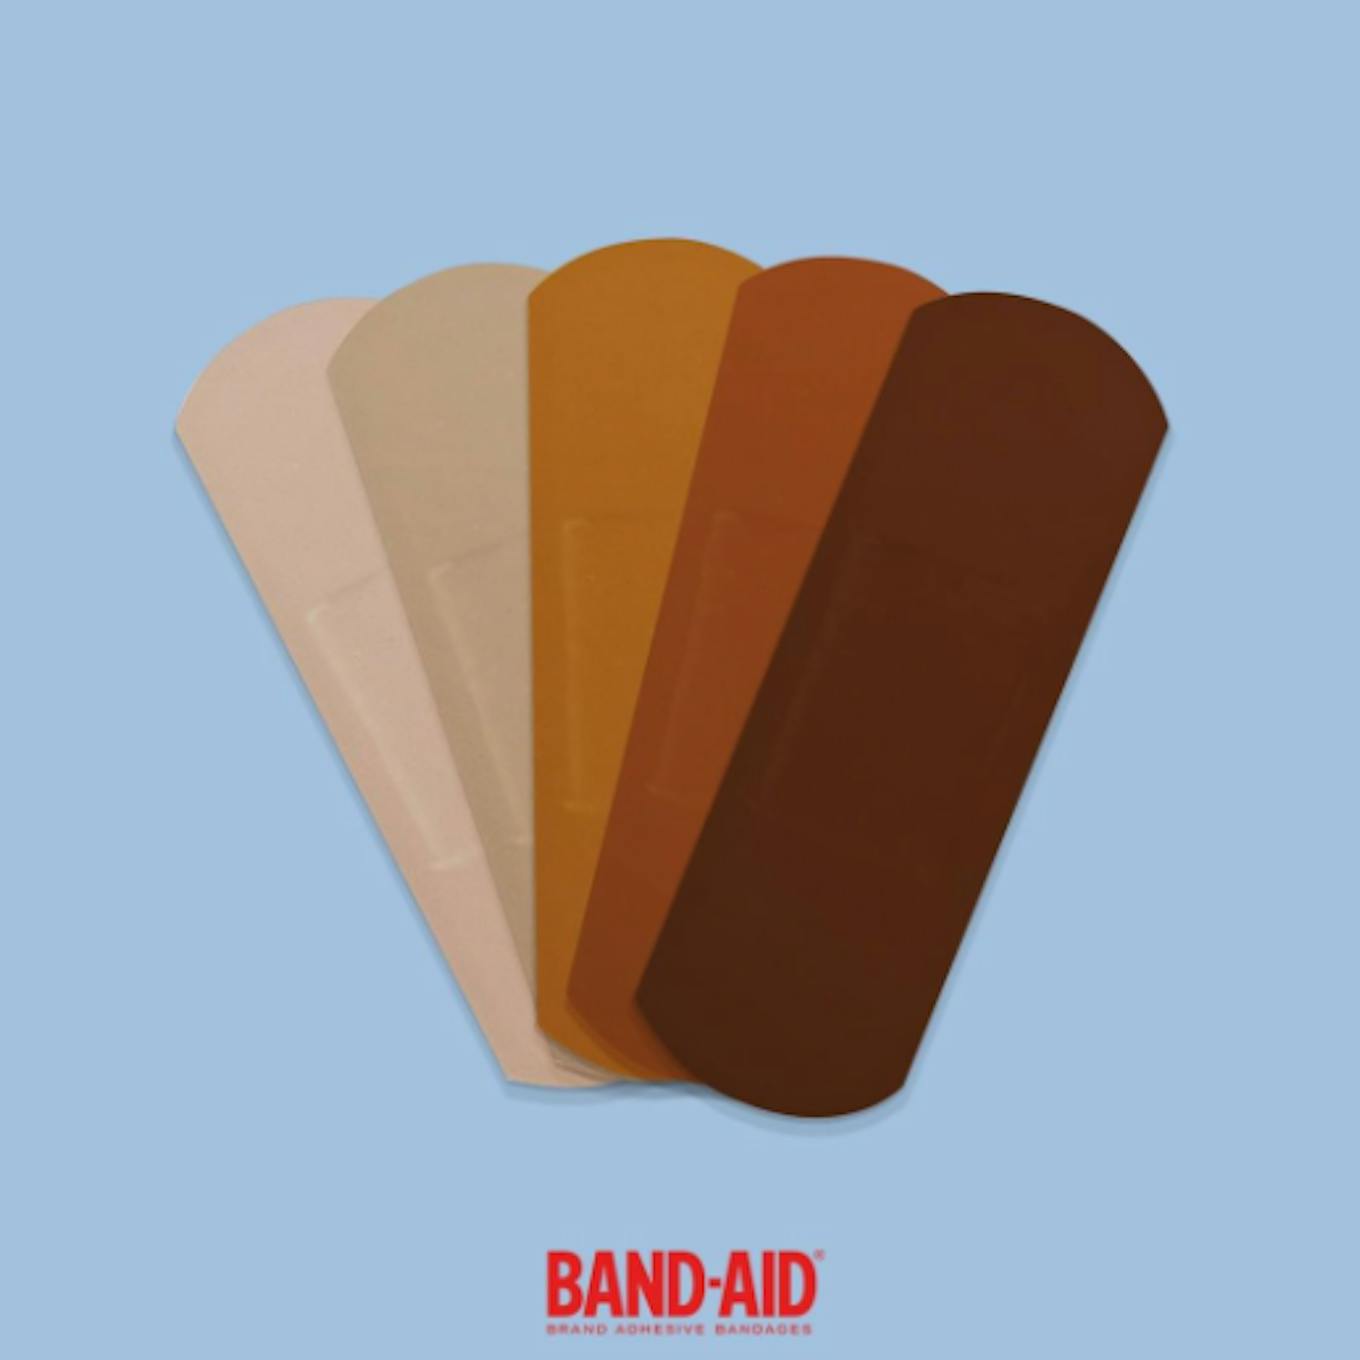 Band-Aid skin tone bandages